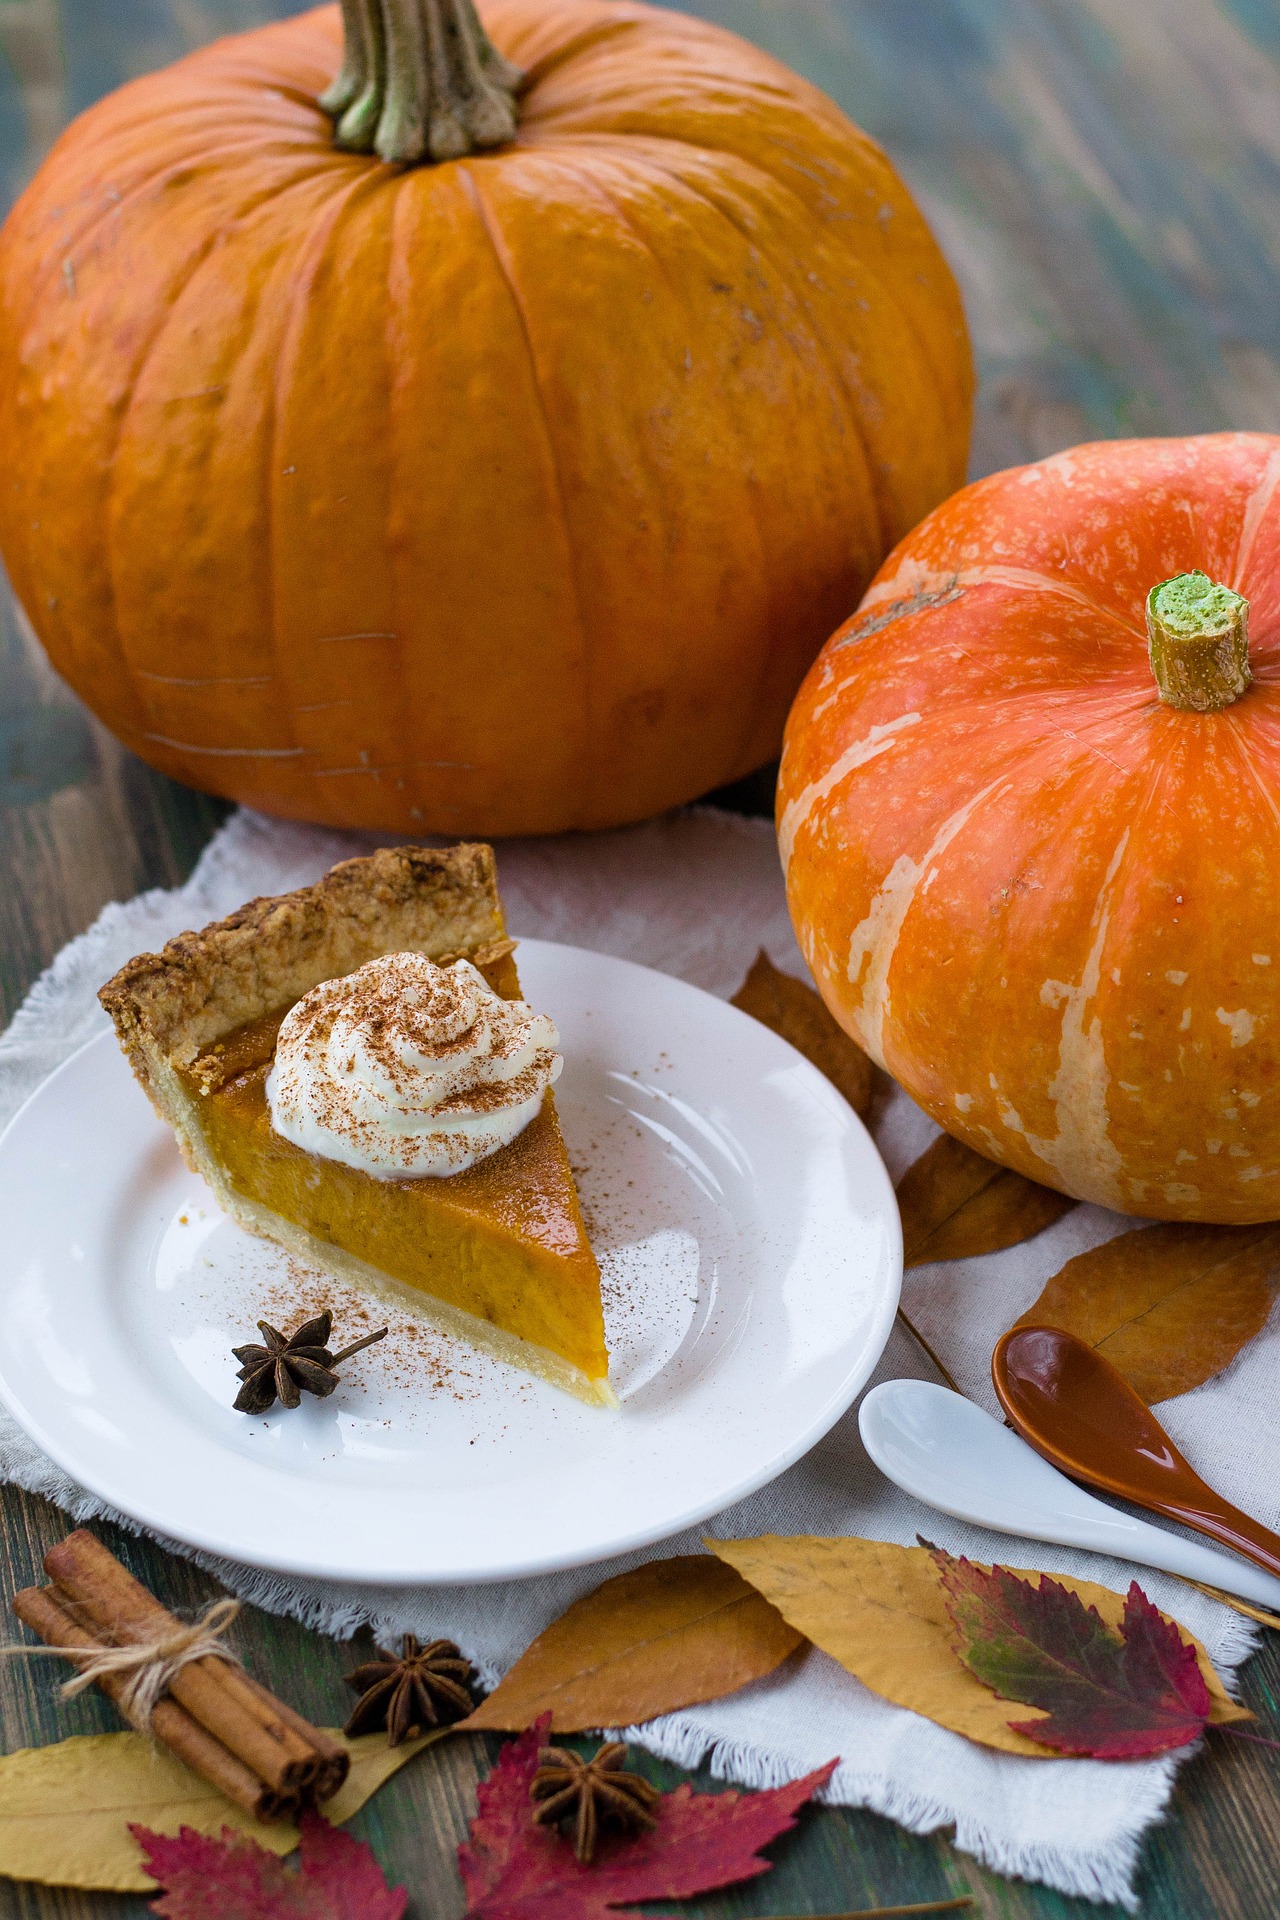 Pumpkin Pie with Almond/Pecan Crust